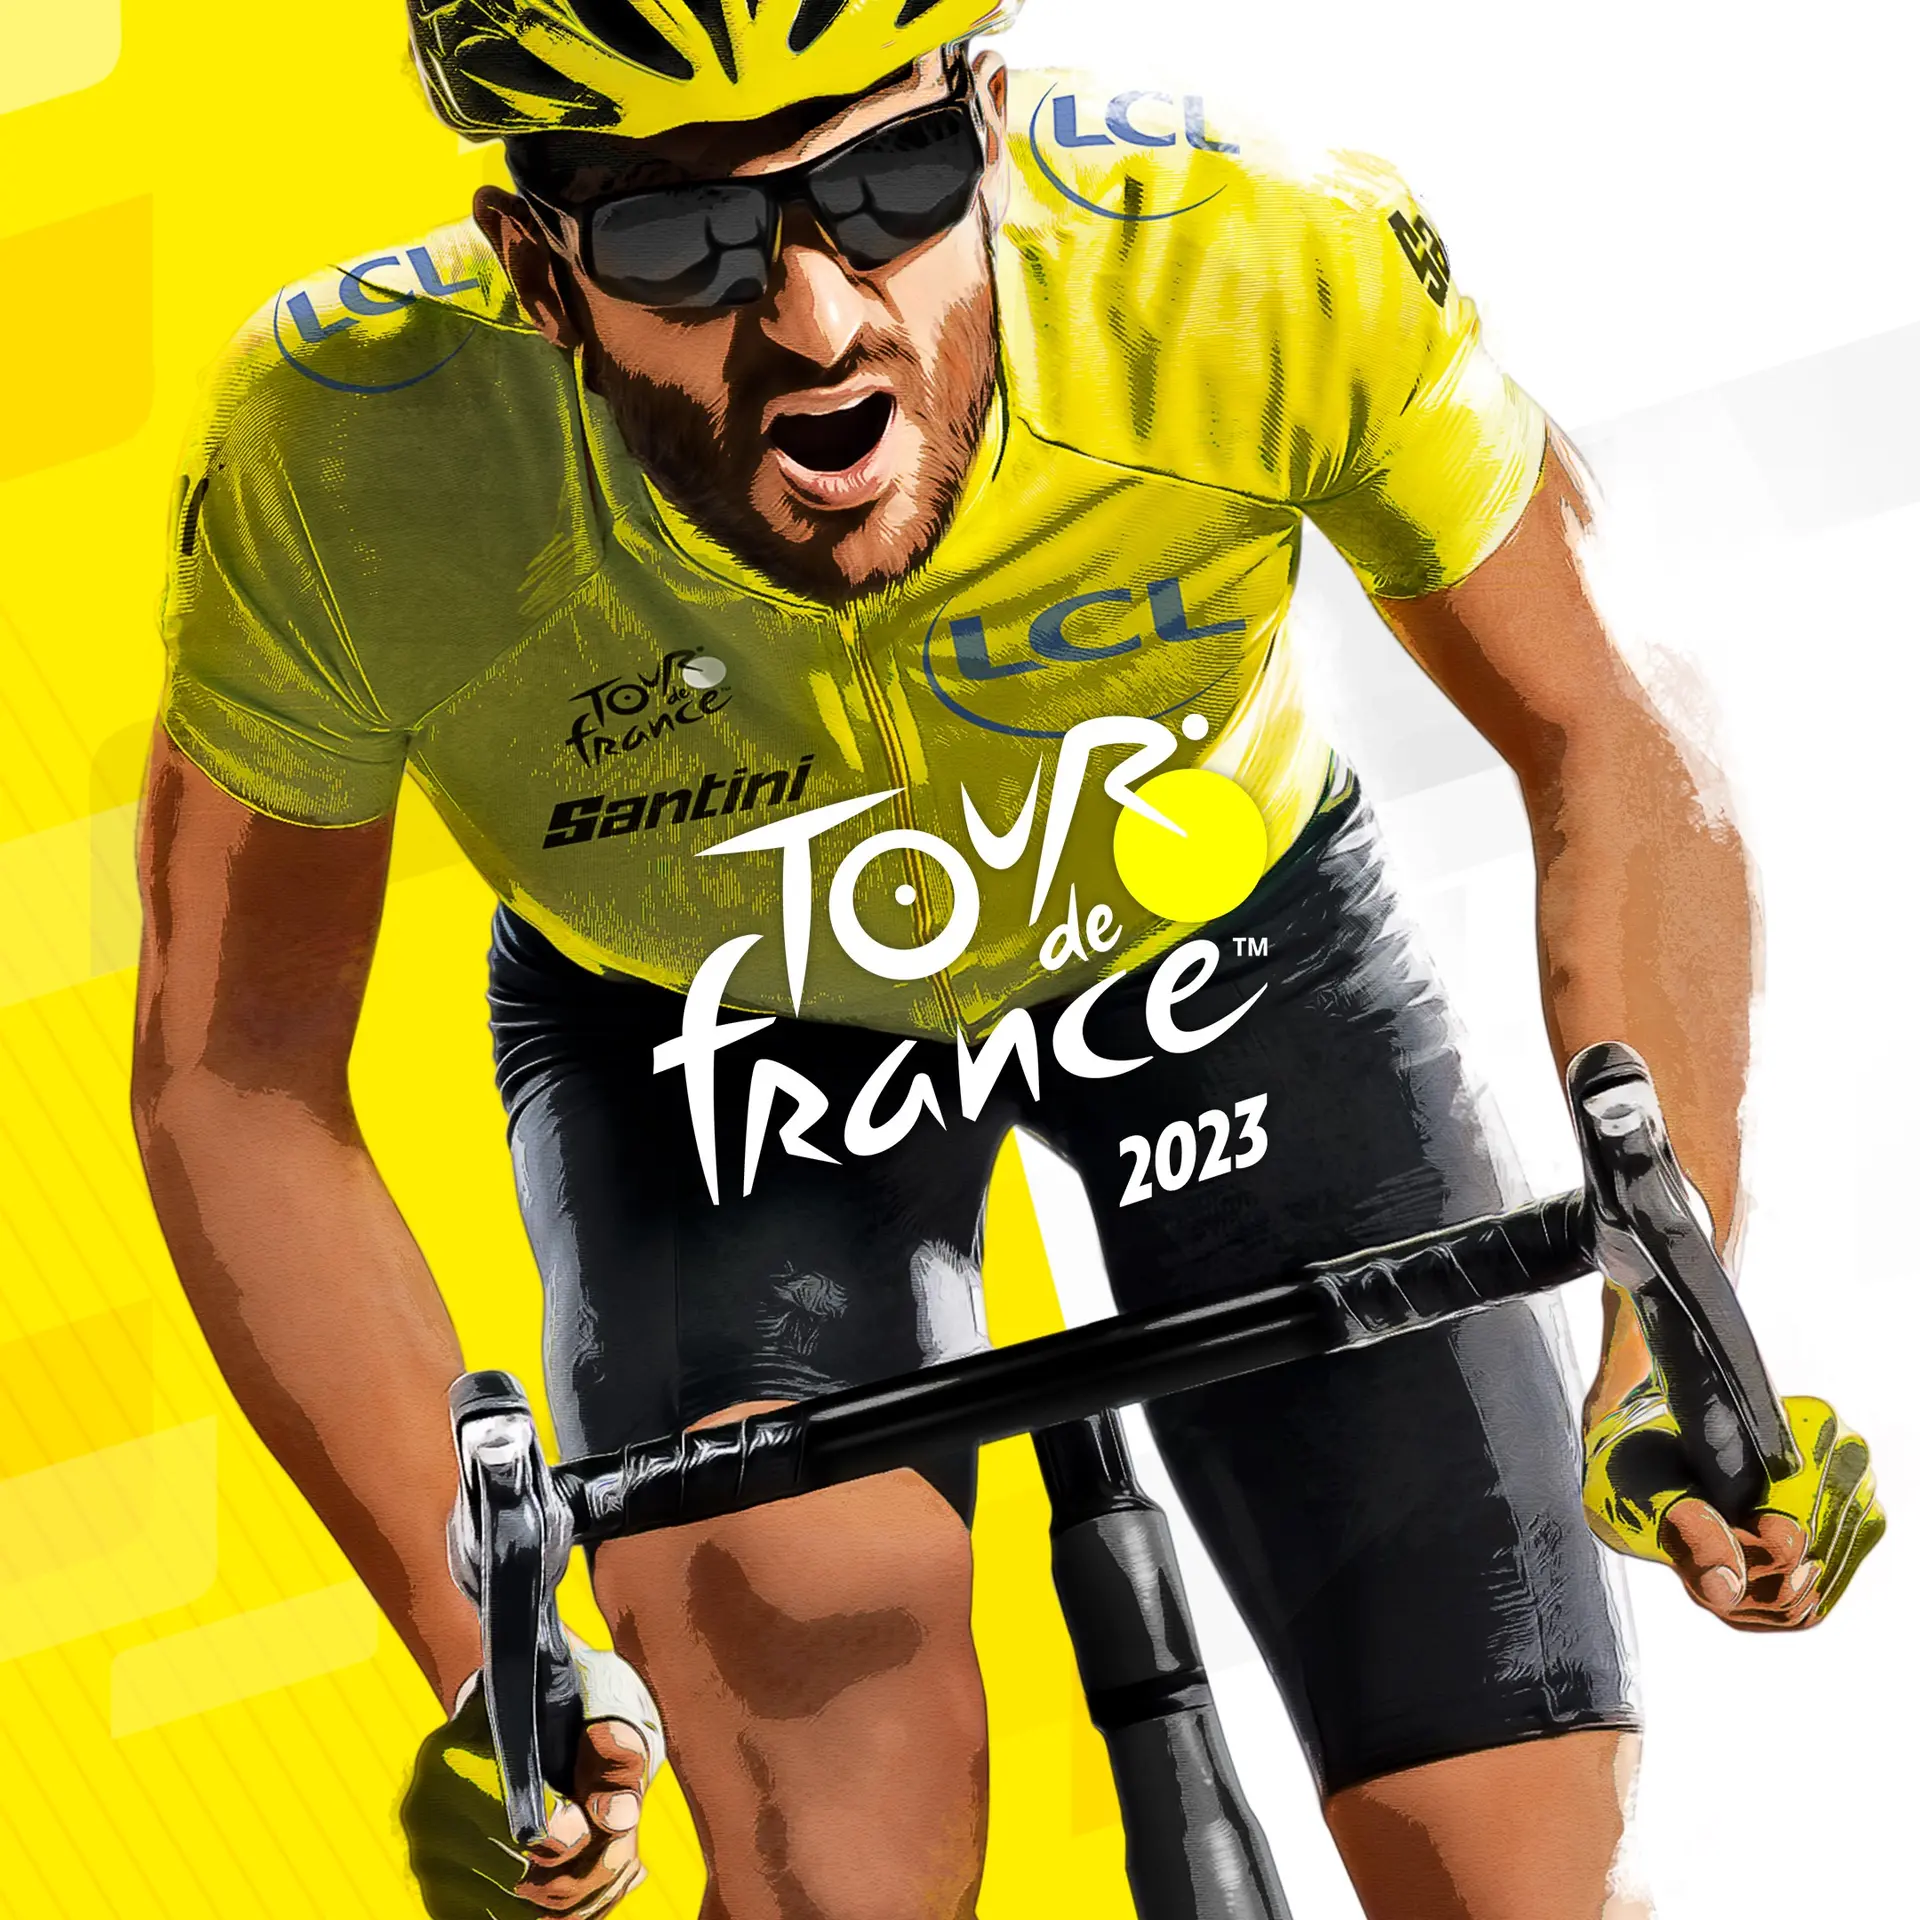 Tour de France 2023 (Xbox Games TR)